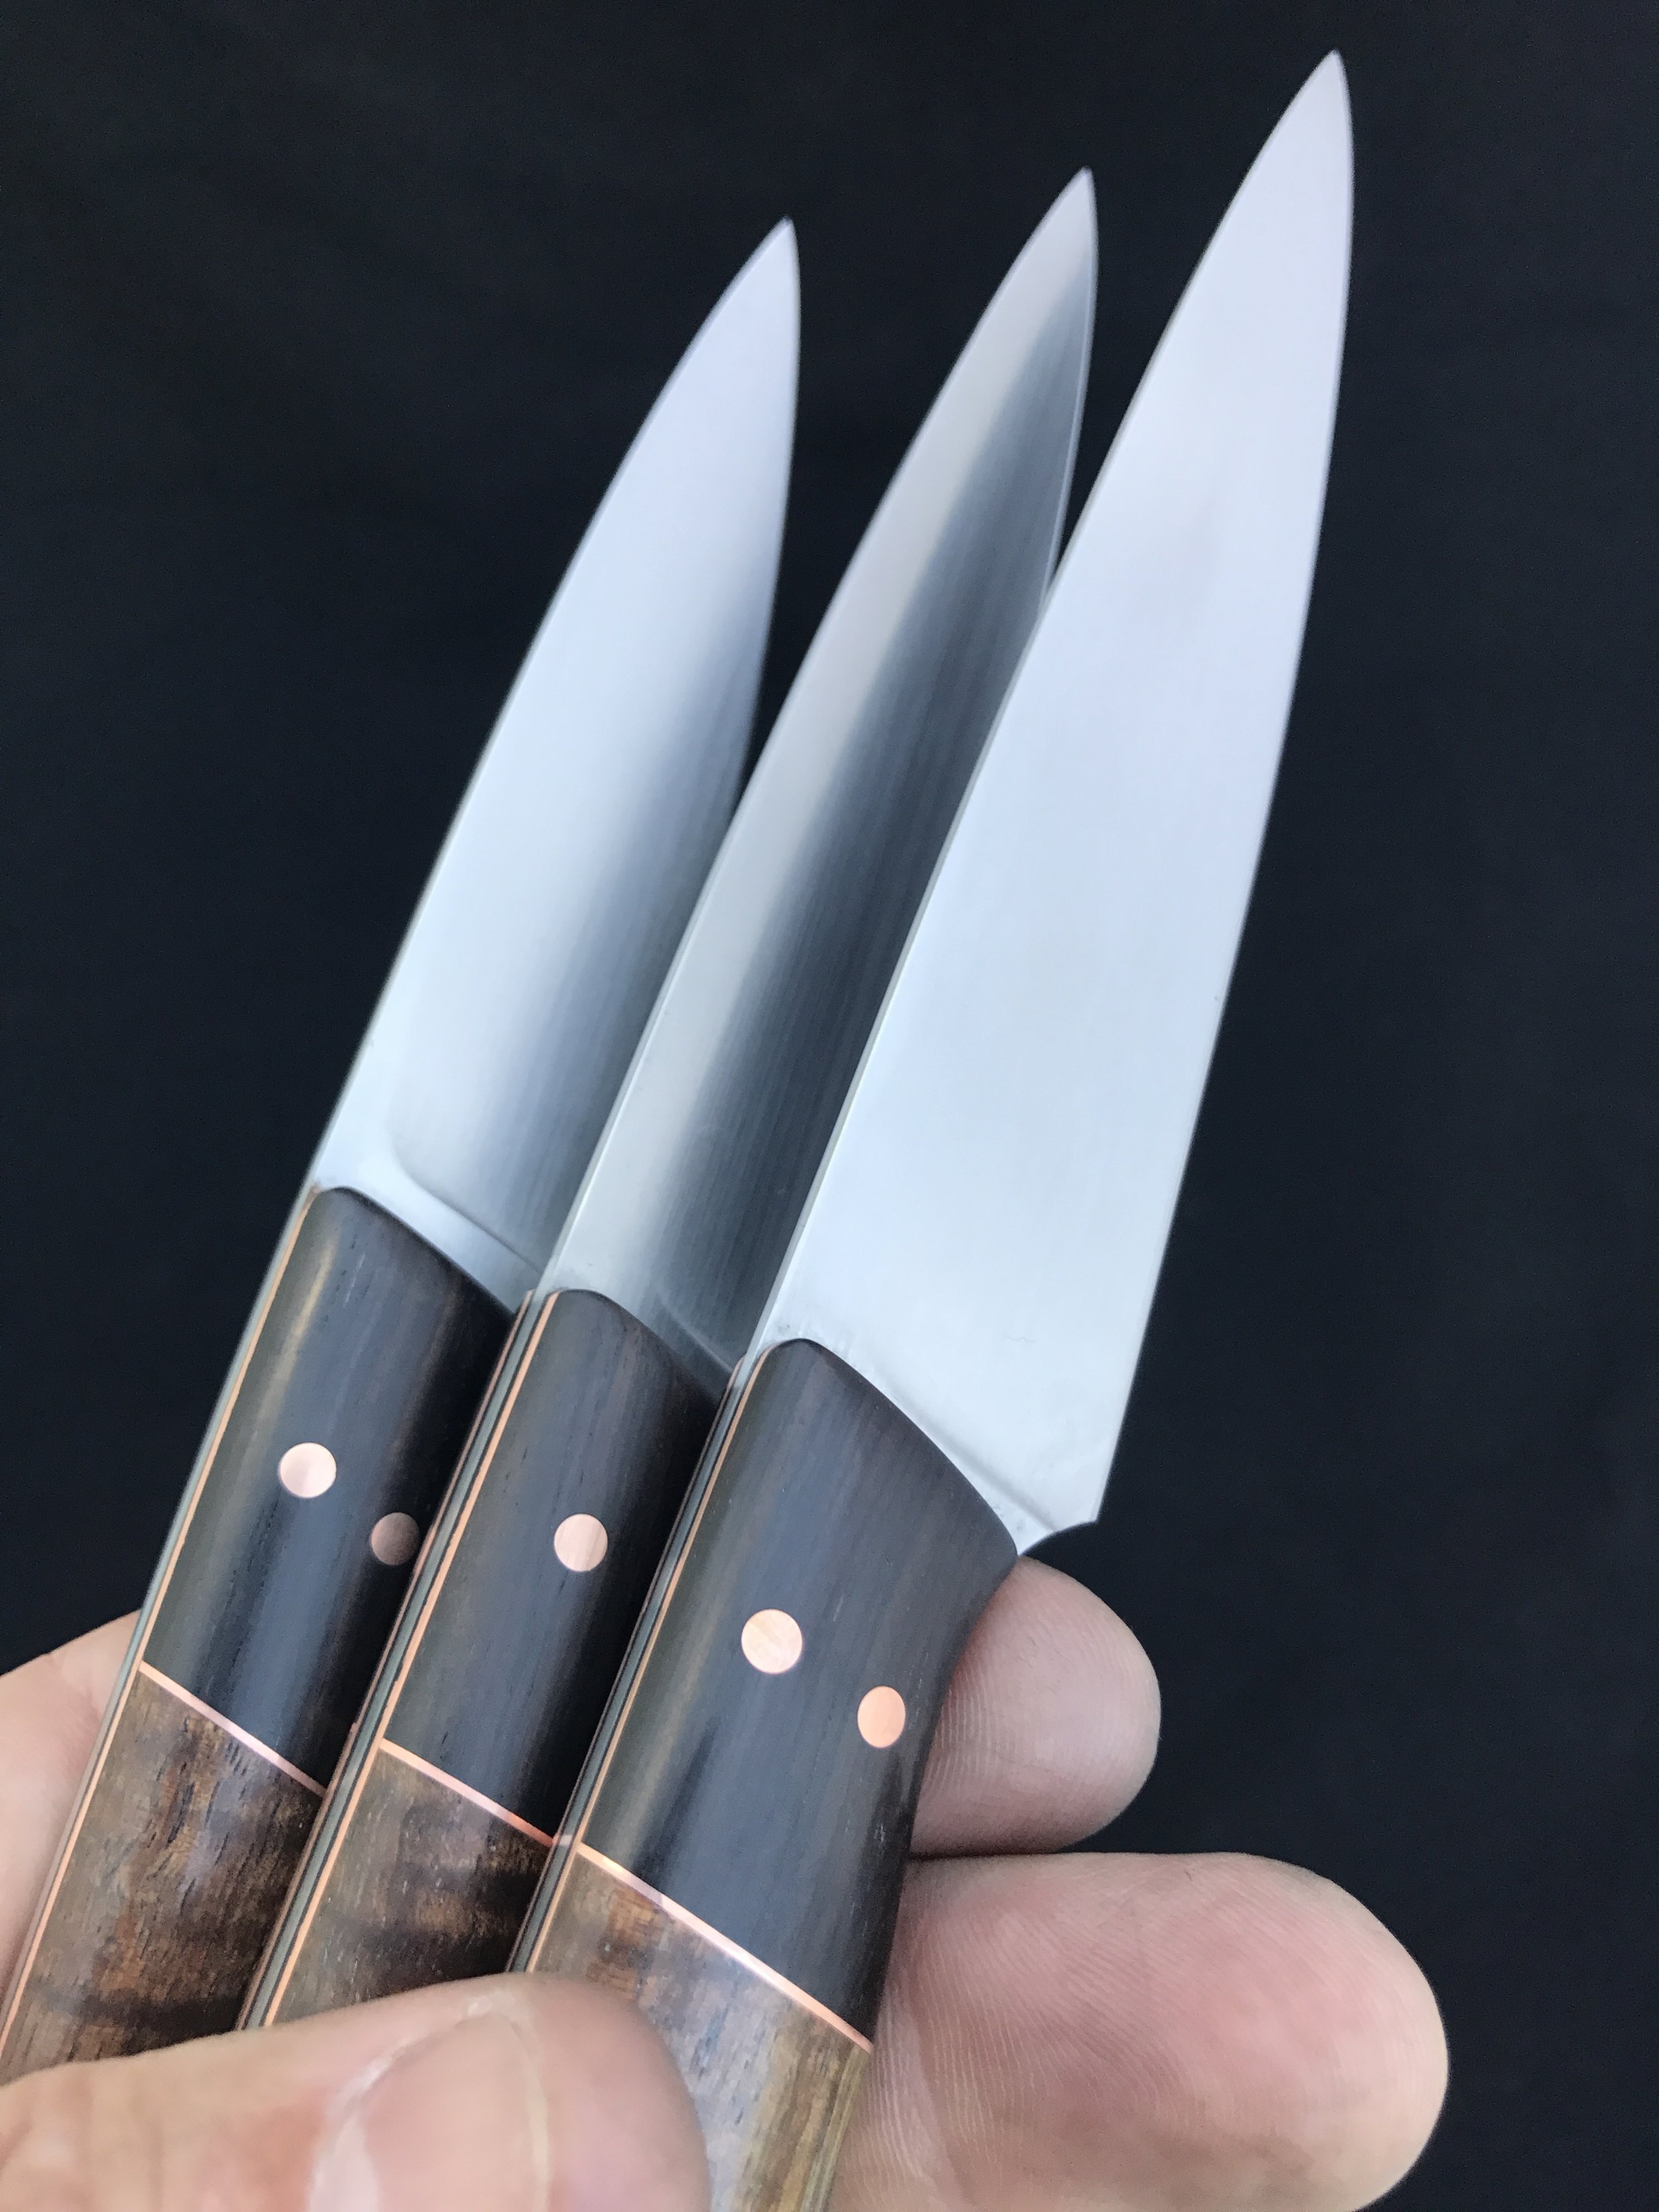 Paring knife details